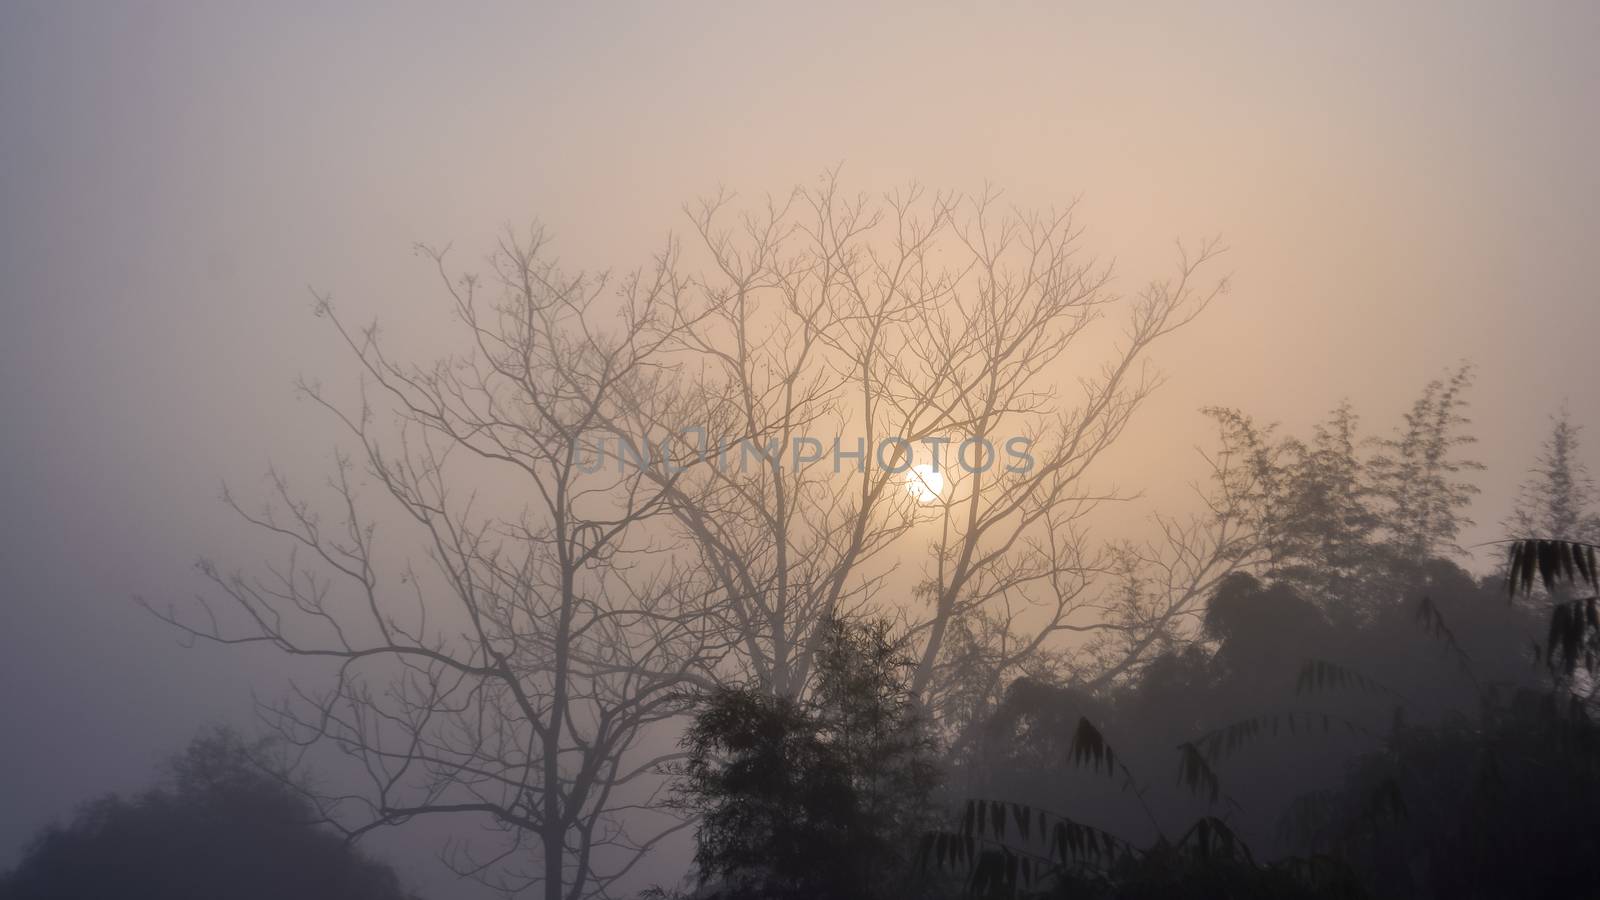 Landscape of forest among mist